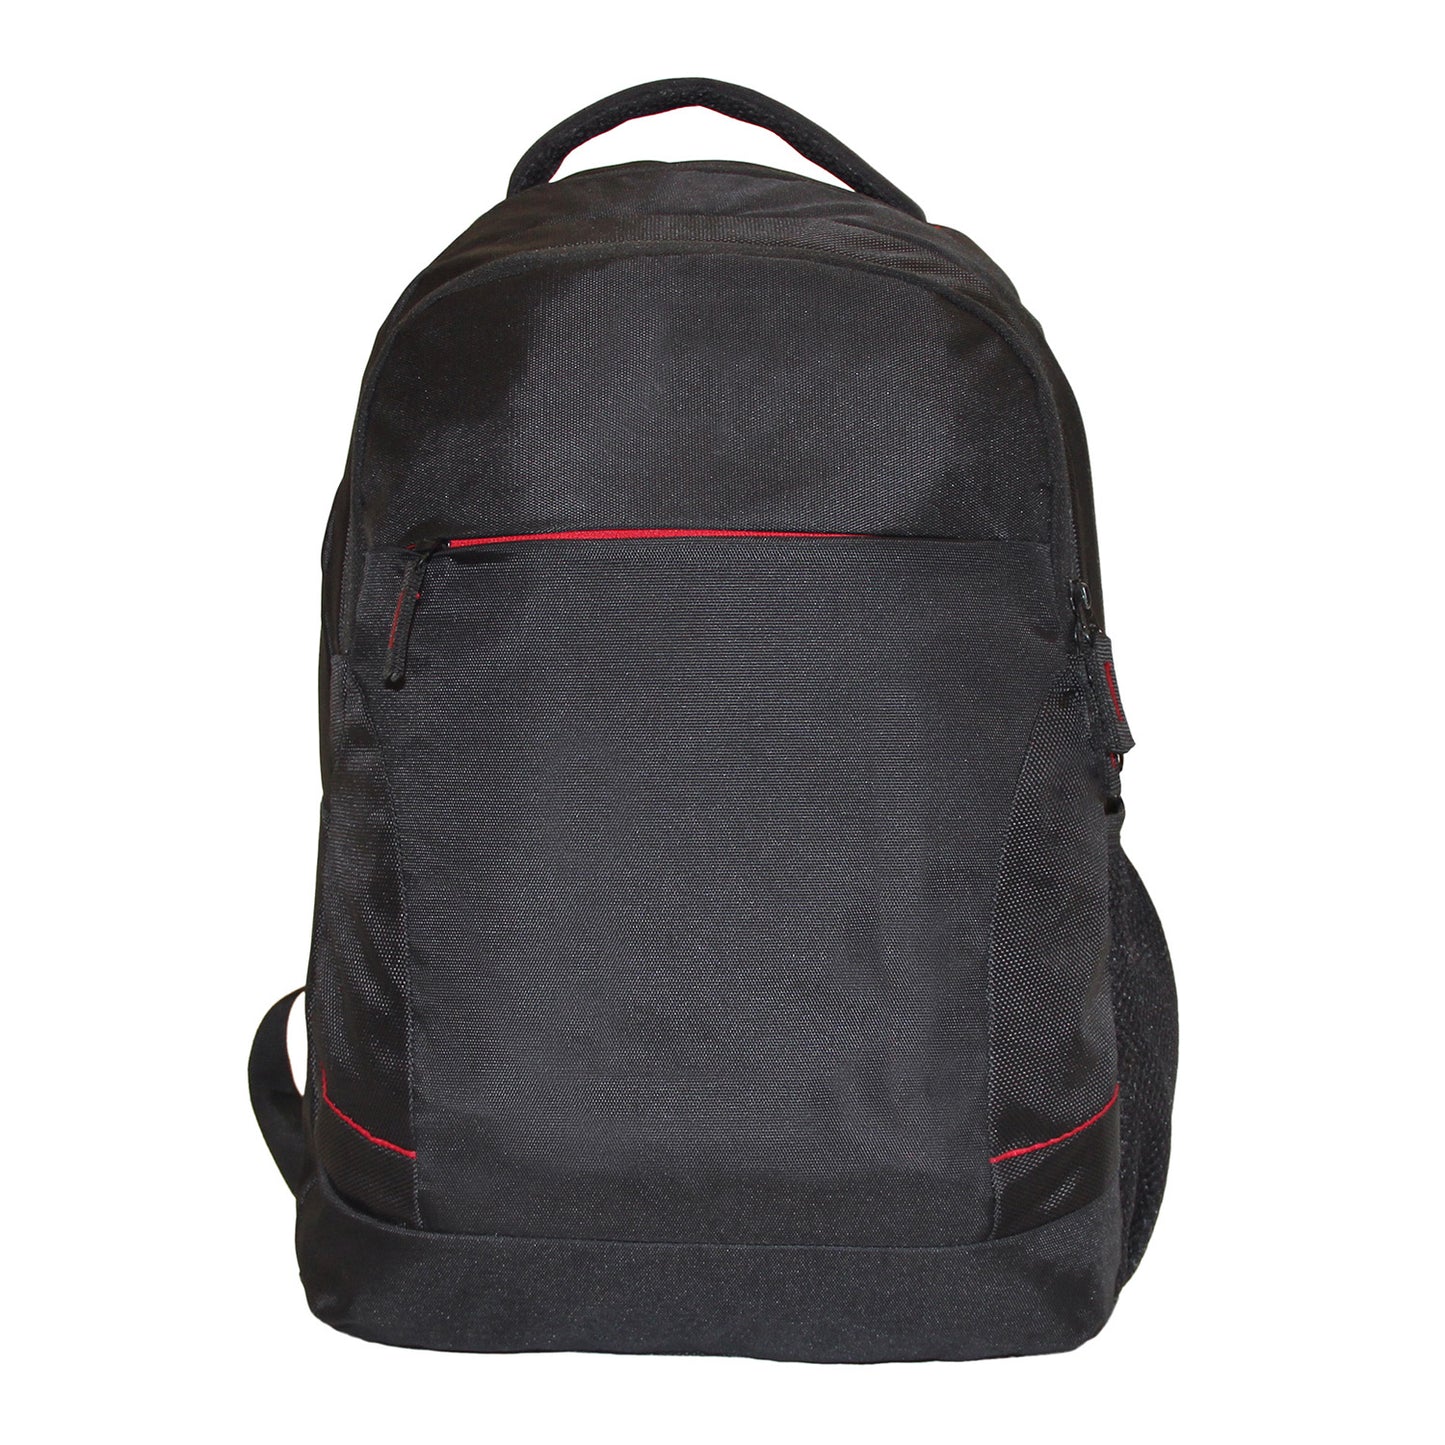 Jet Black Everyday Backpack